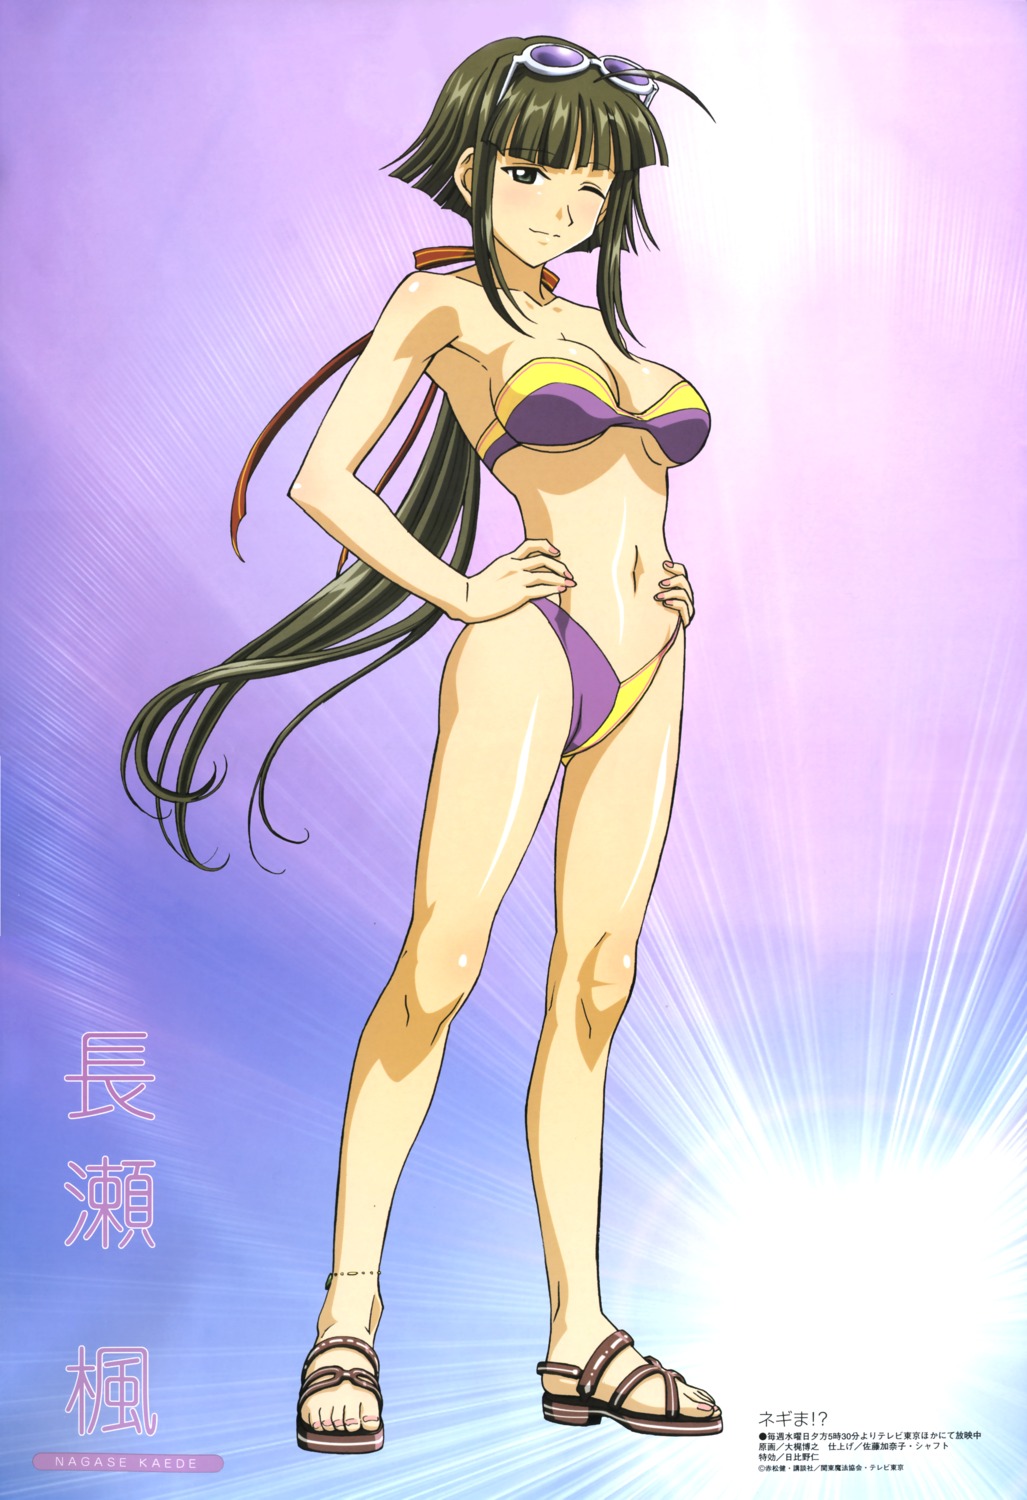 bikini cleavage mahou_sensei_negima nagase_kaede ookaji_hiroyuki swimsuits